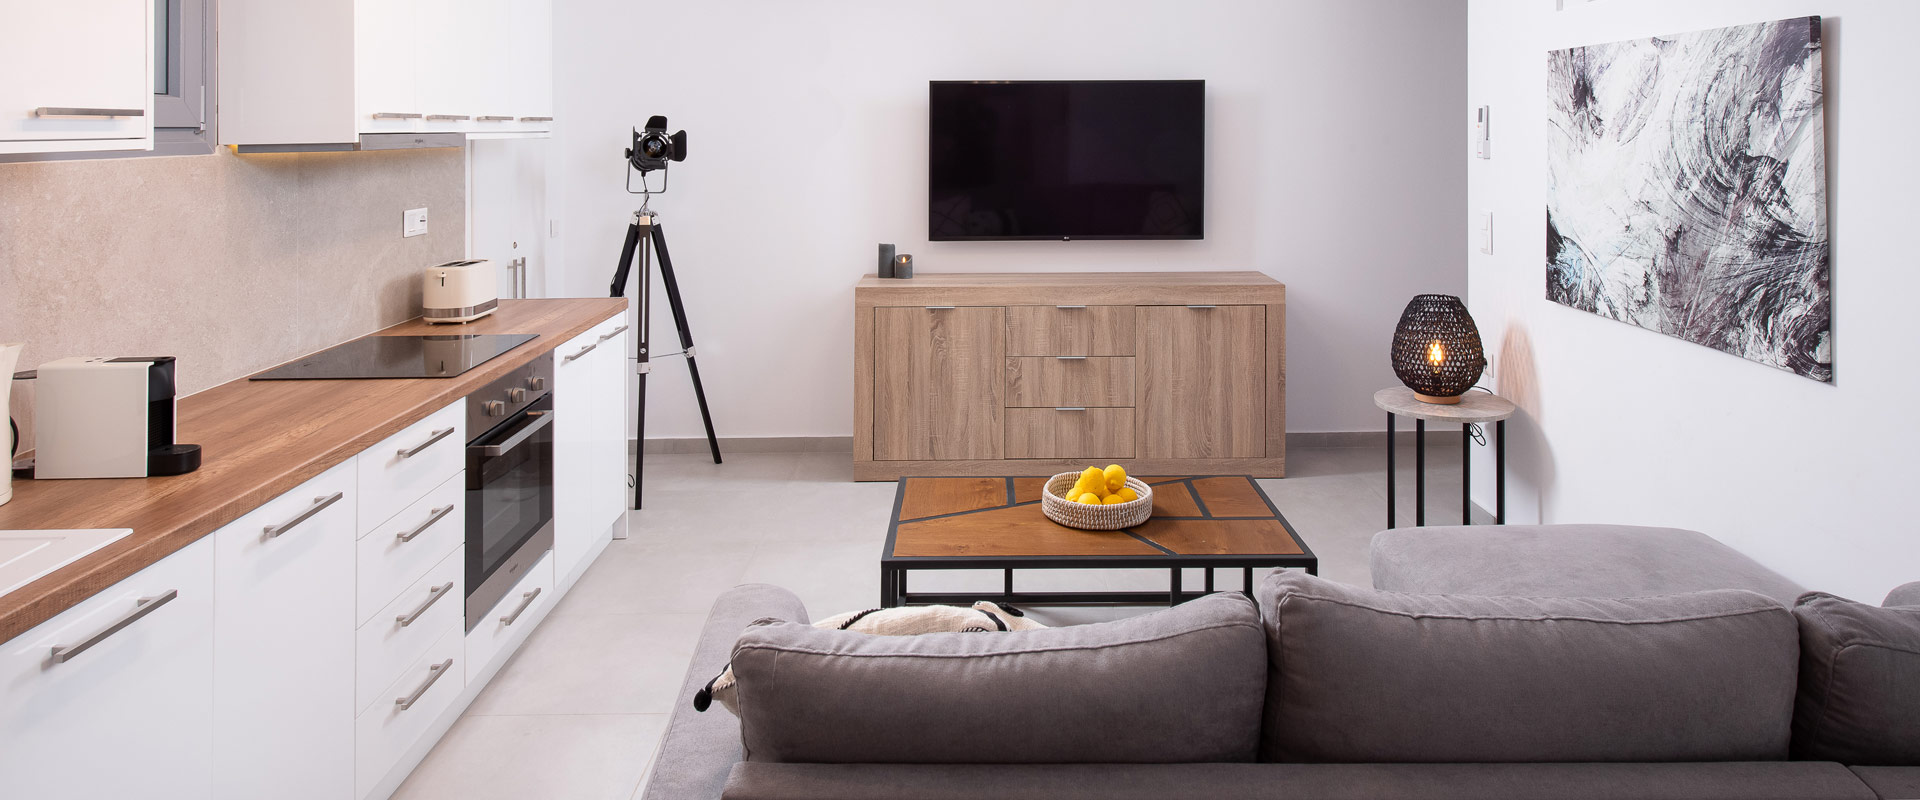 Three Bedroom Semi Basement Apartment Living Room TV